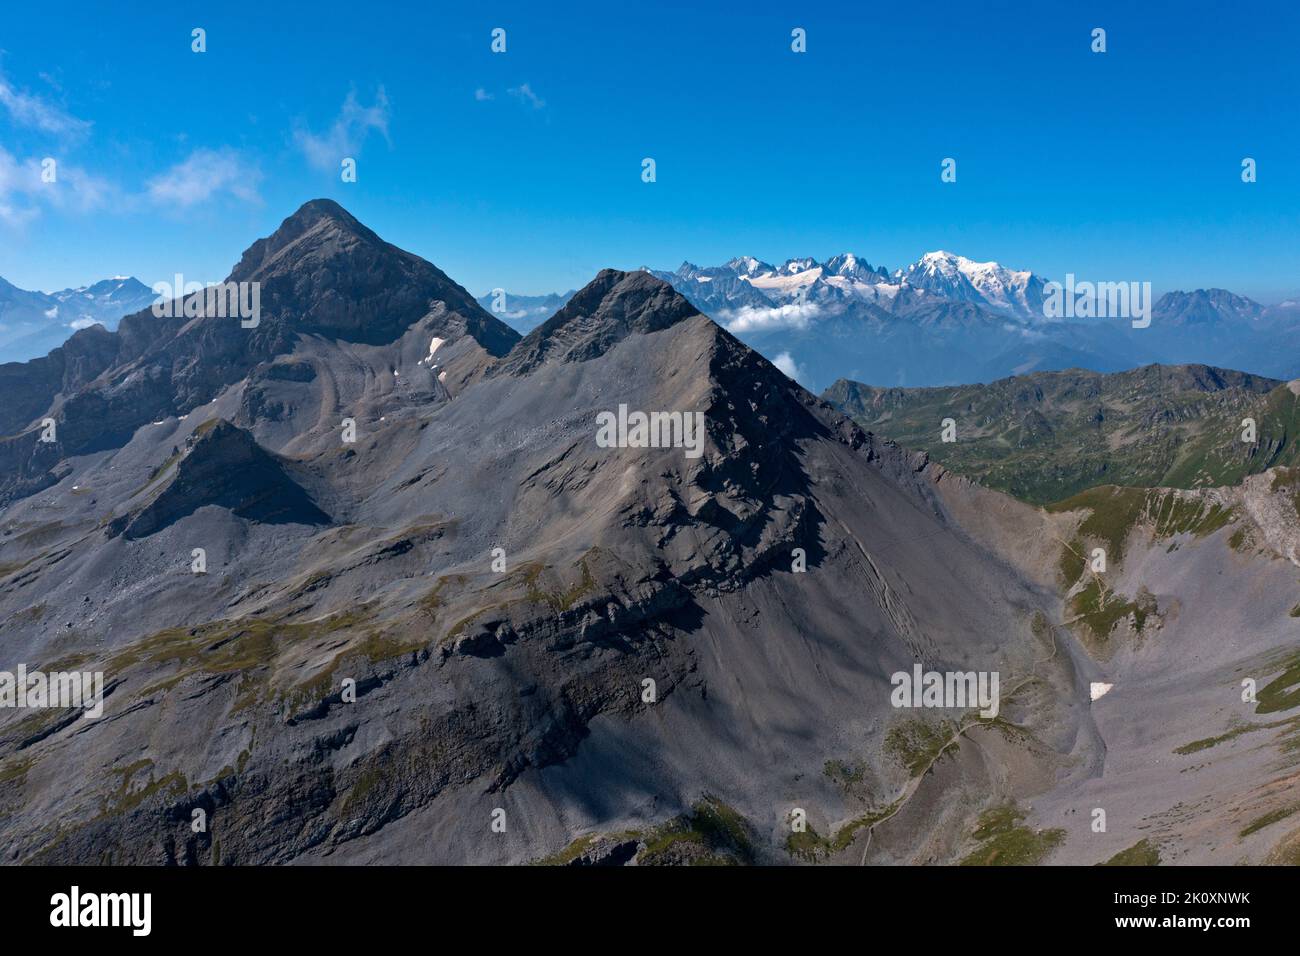 Vue sur le col Fenestral jusqu'au massif du Mont blanc, Alpes bernoises, Ovronnaz, Valais, Suisse Banque D'Images